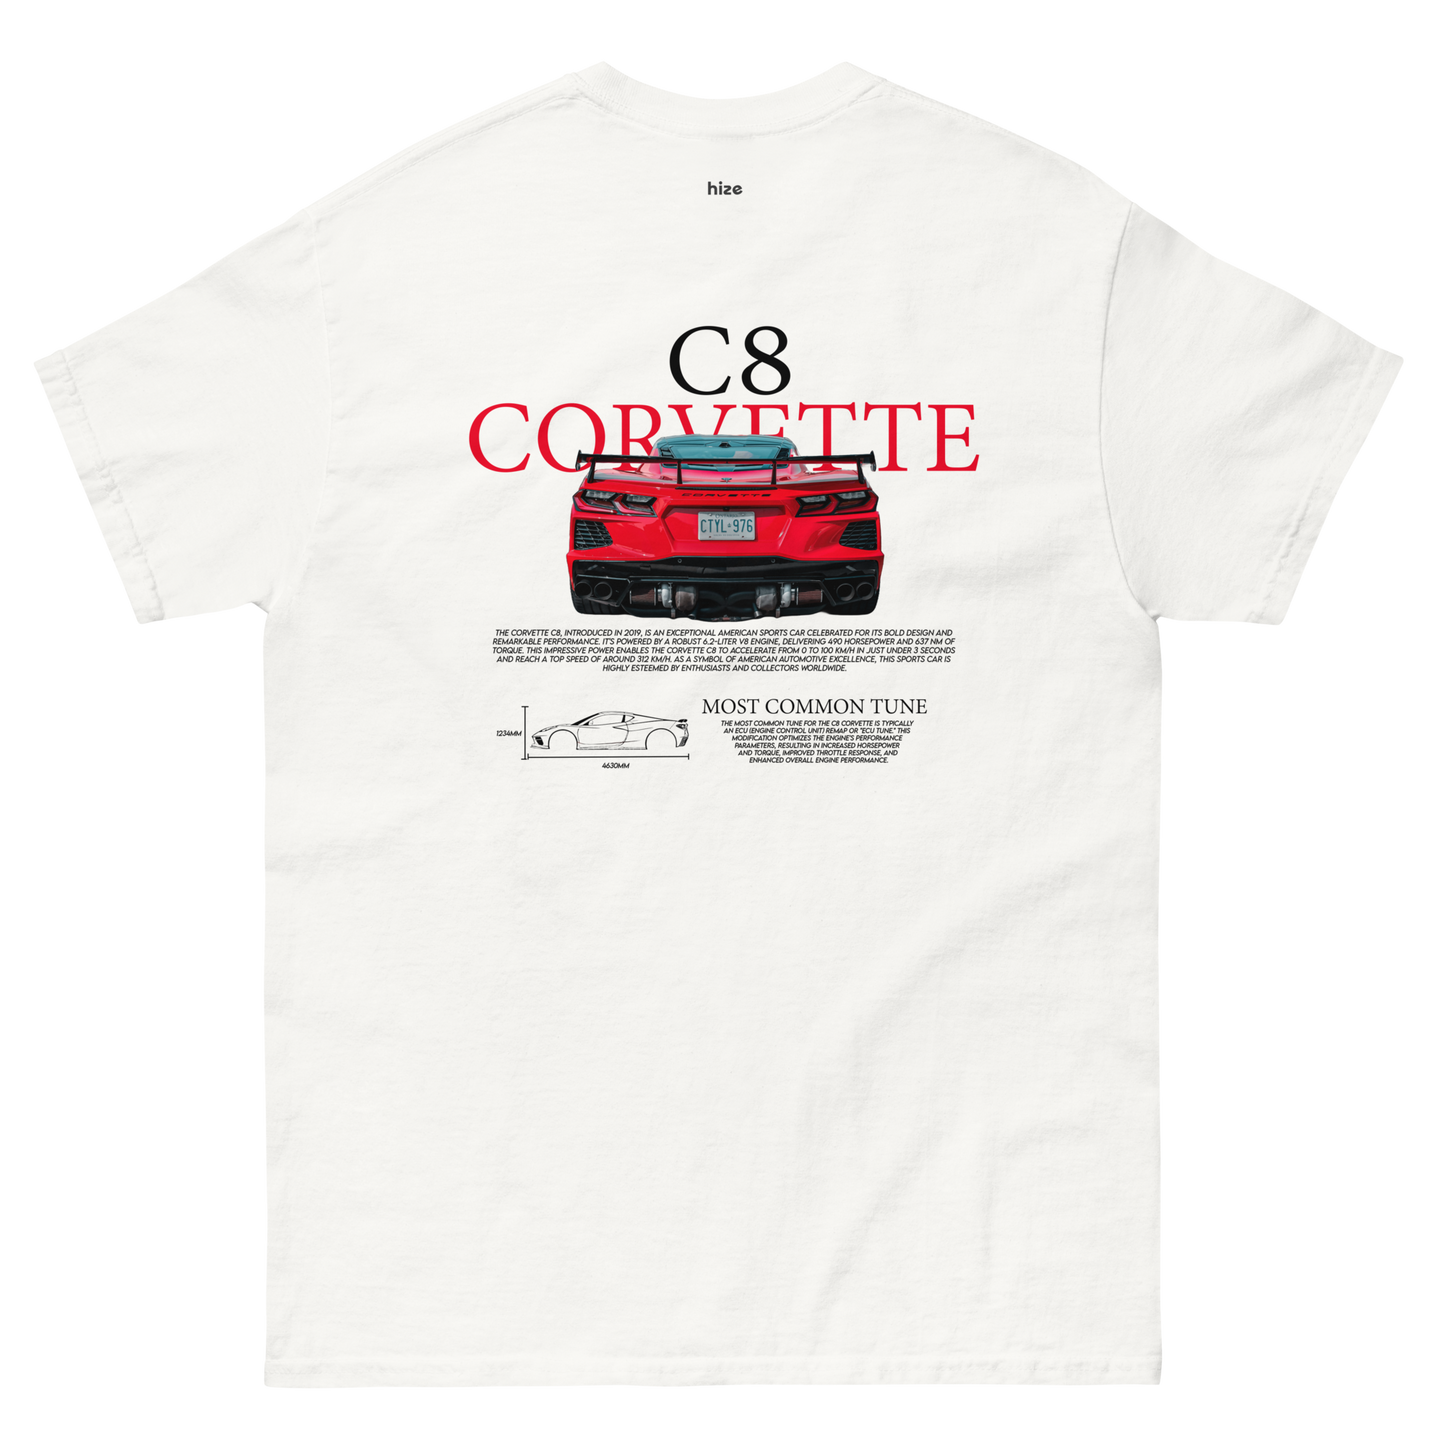 Corvette C8 T-shirt